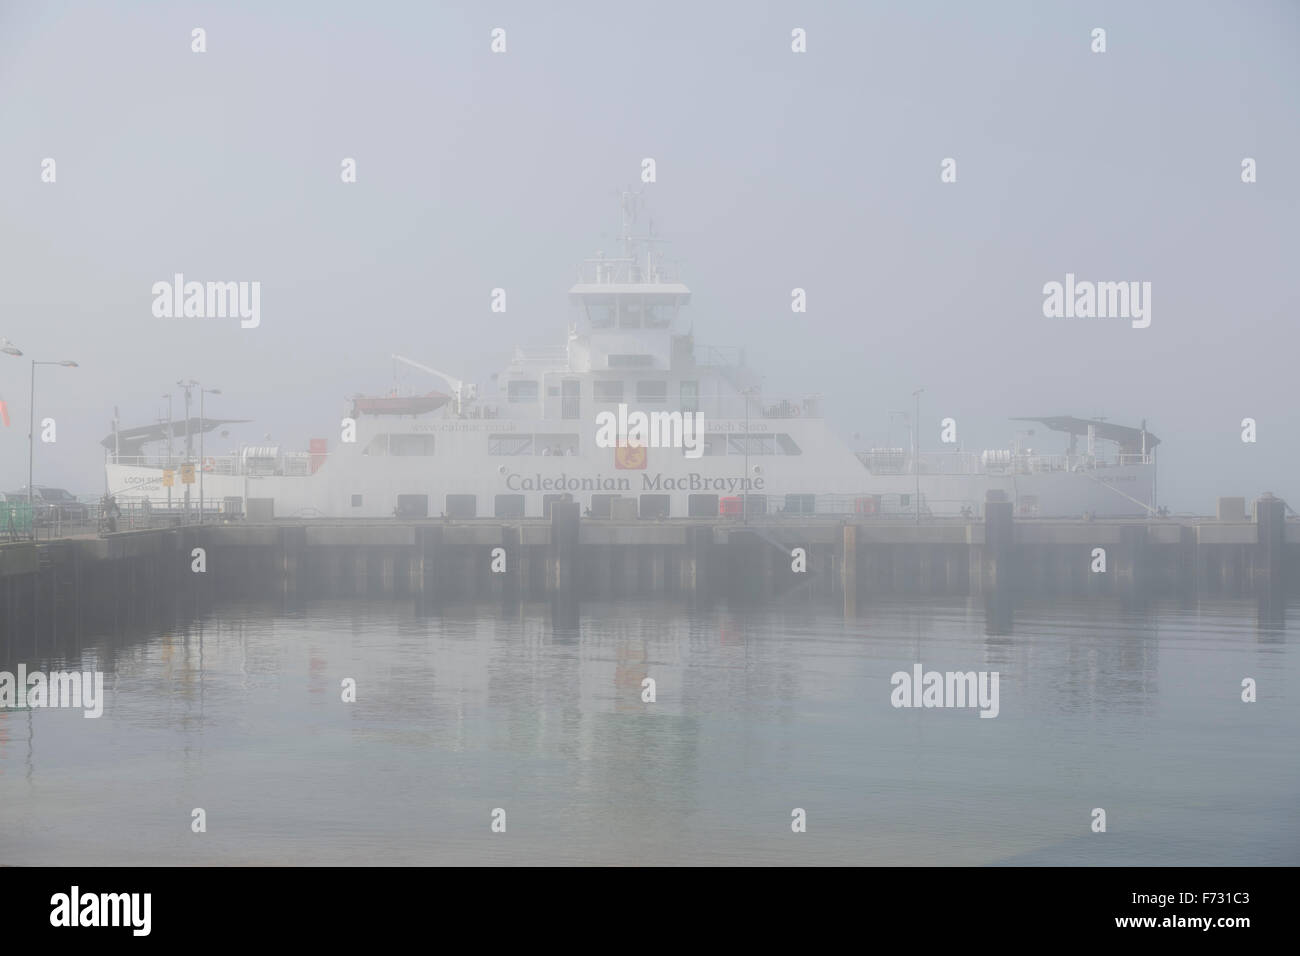 MacBrayne Ferry Caledoniano atado en el puerto de Largs en el Firth of Clyde en North Ayrshire debido a la niebla, Reino Unido Foto de stock